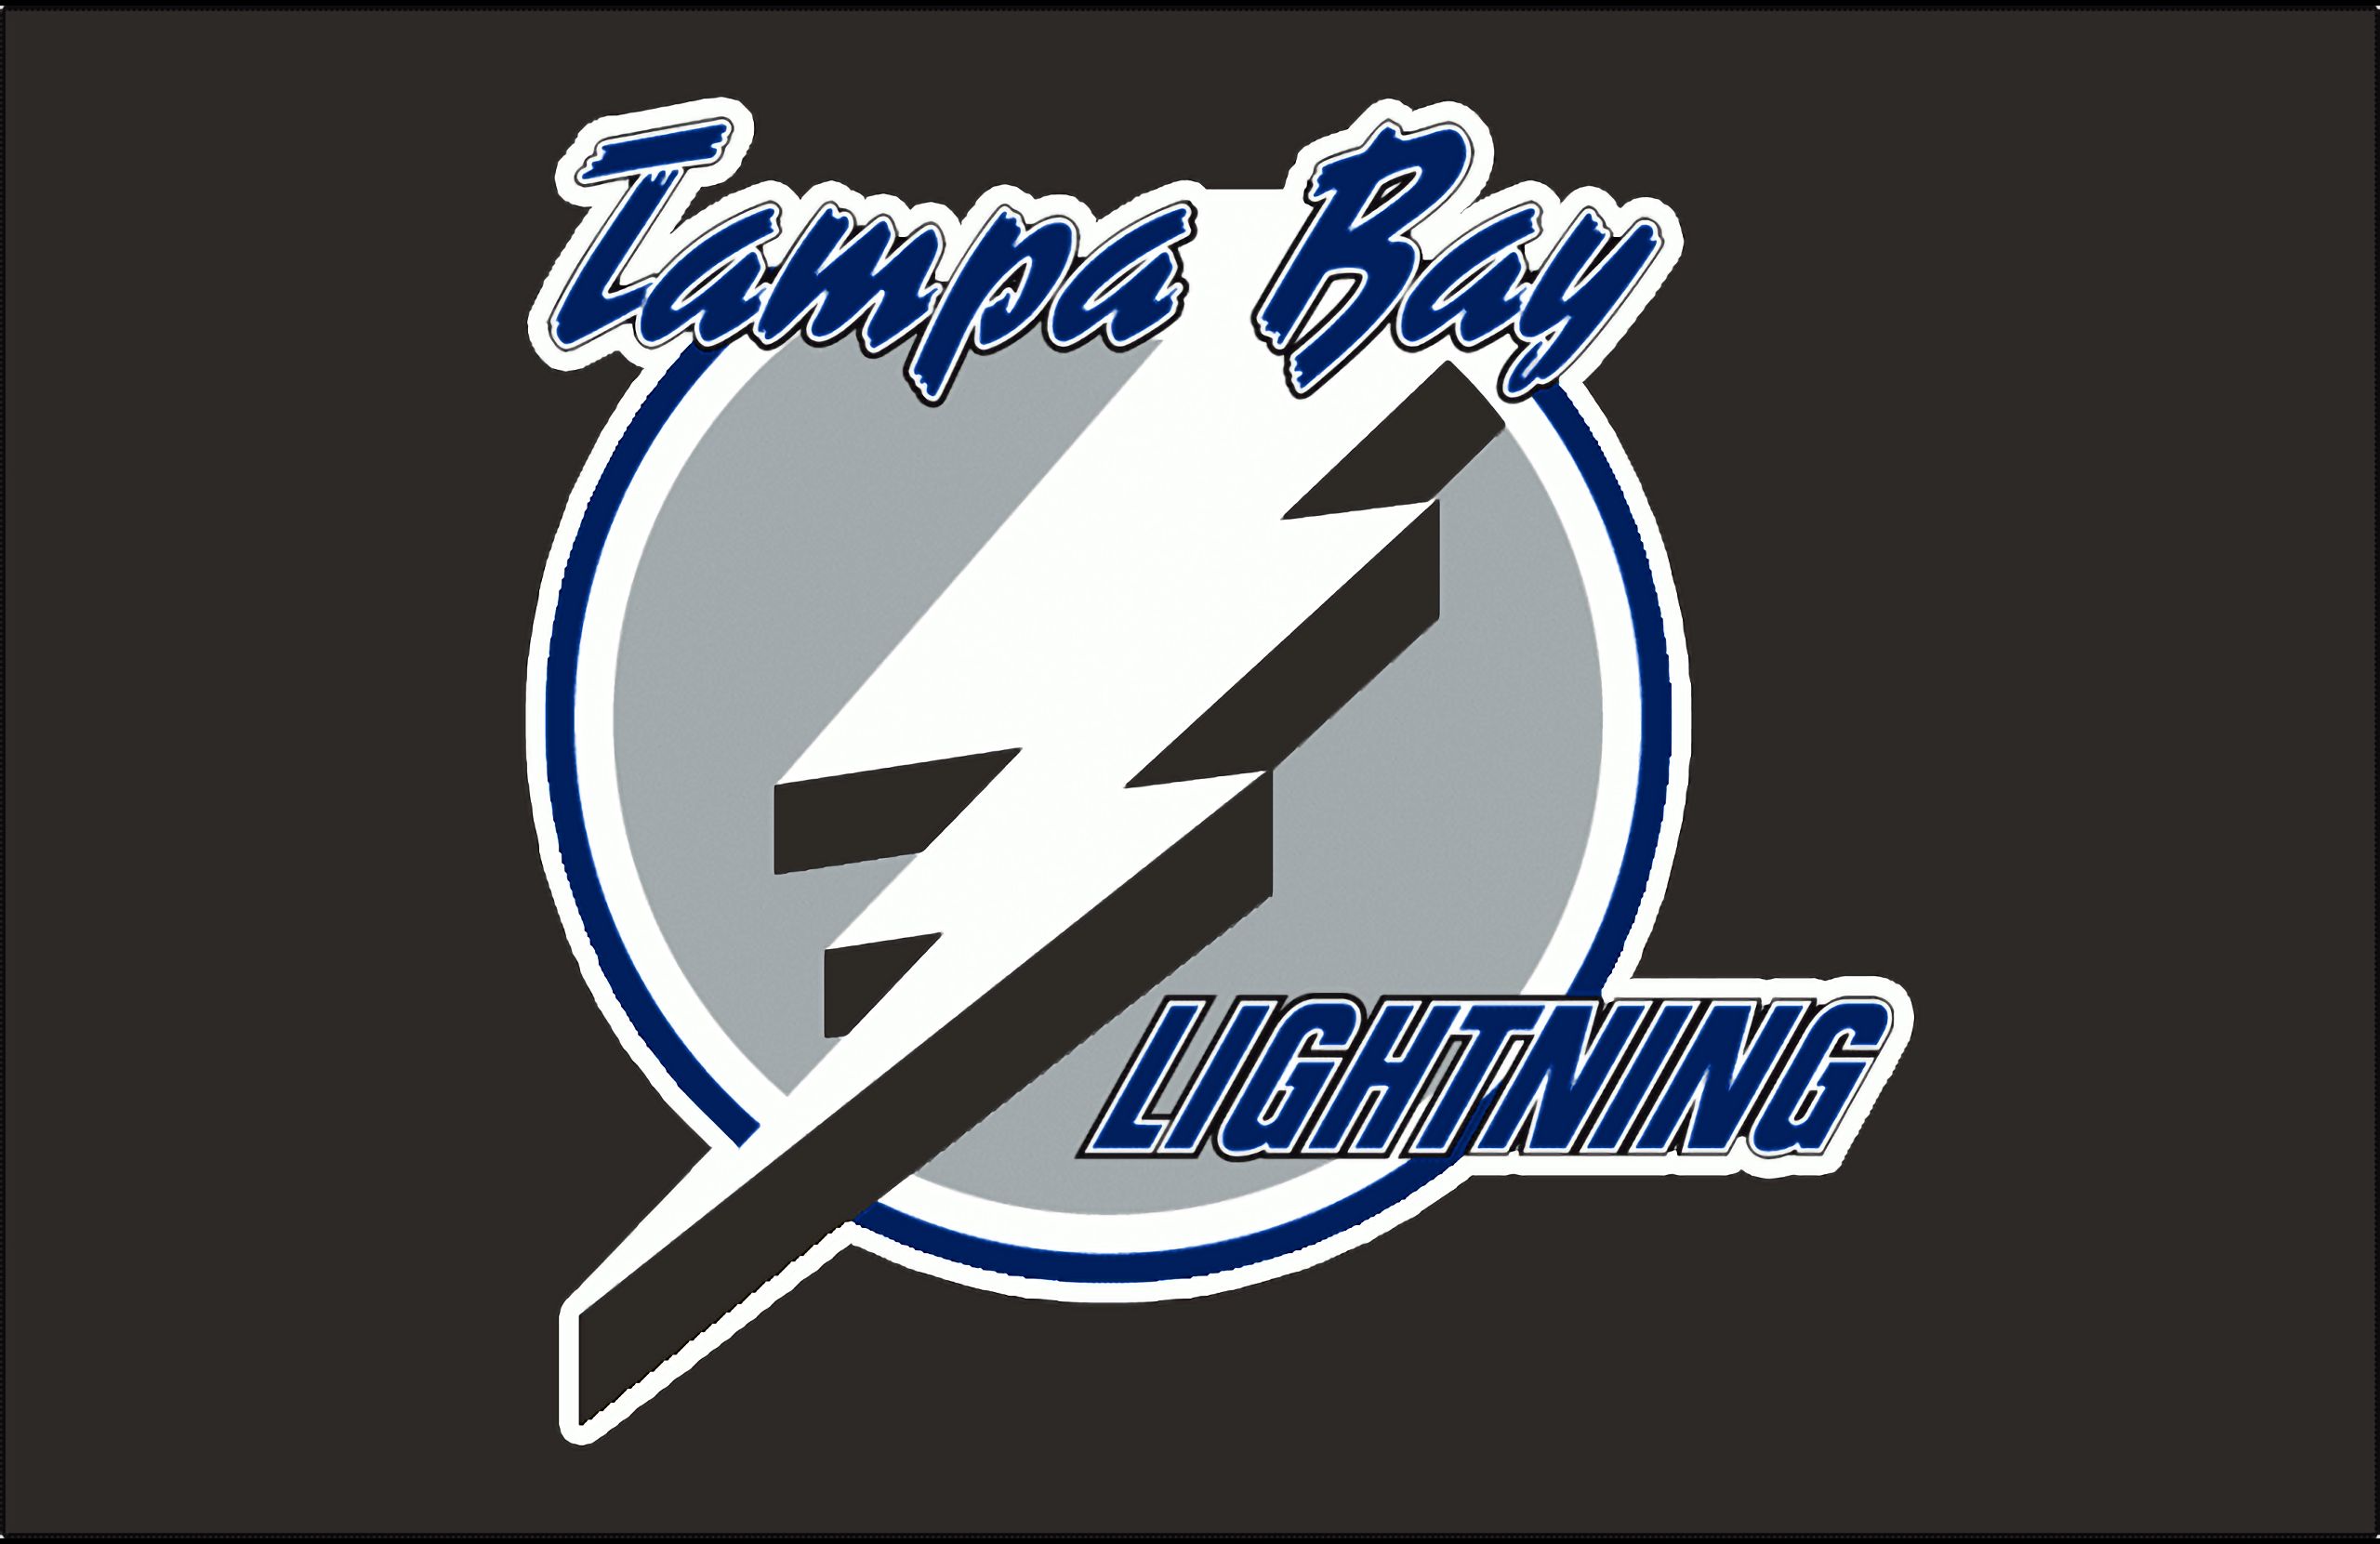 200+] Tampa Bay Lightning Wallpapers